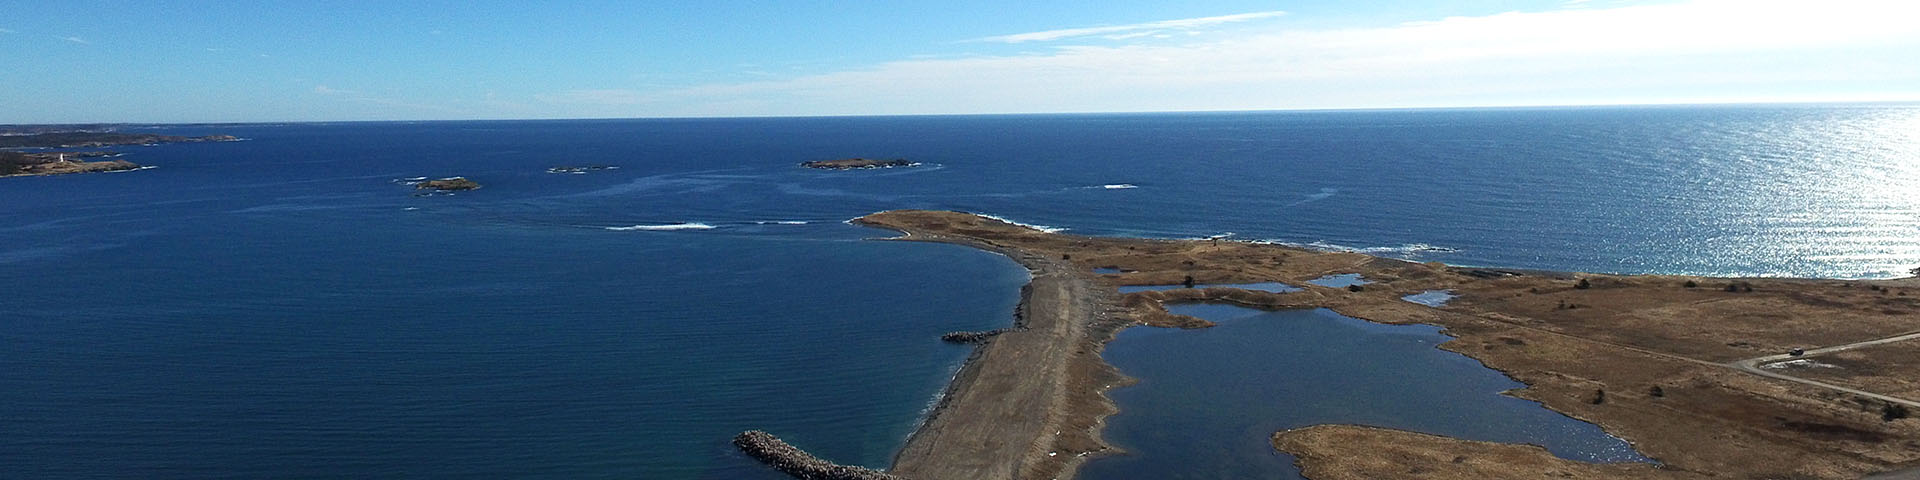 Vue aérienne de la Pointe de Rochefort et du paysage sur l'océan.